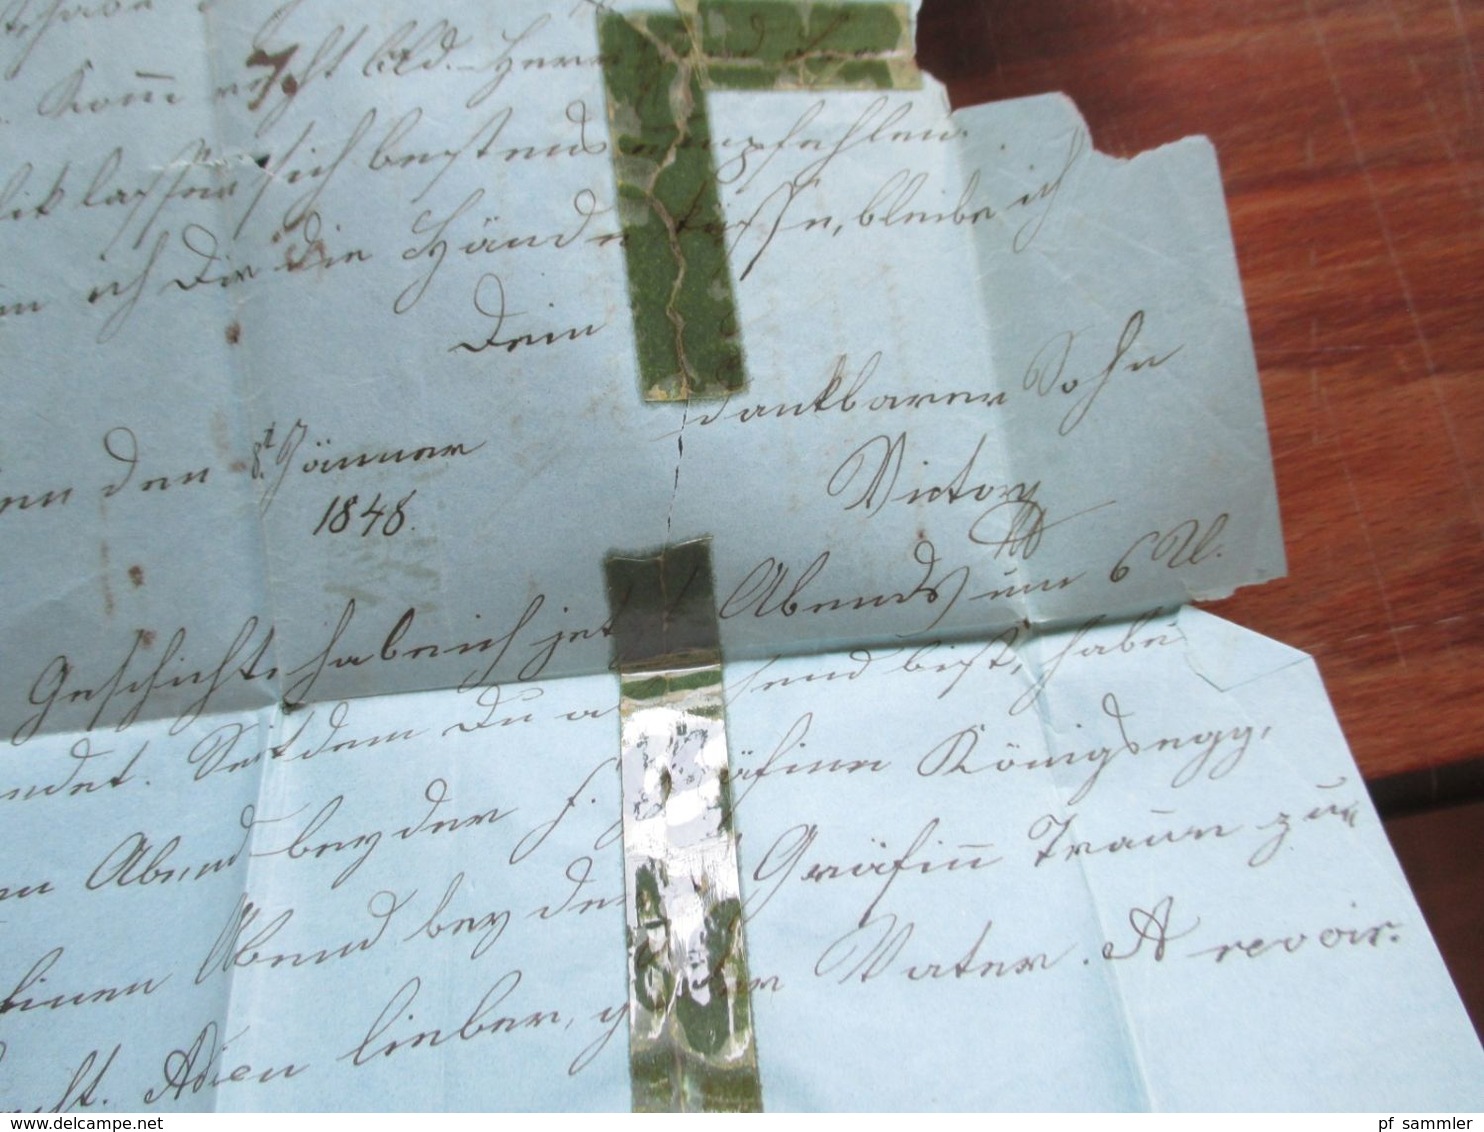 Österreich 8.1.1848 Faltbrief mit viel Inhalt und einigen Stempeln u.a. Fahnenstempel Vorne handschriftlich V. 12